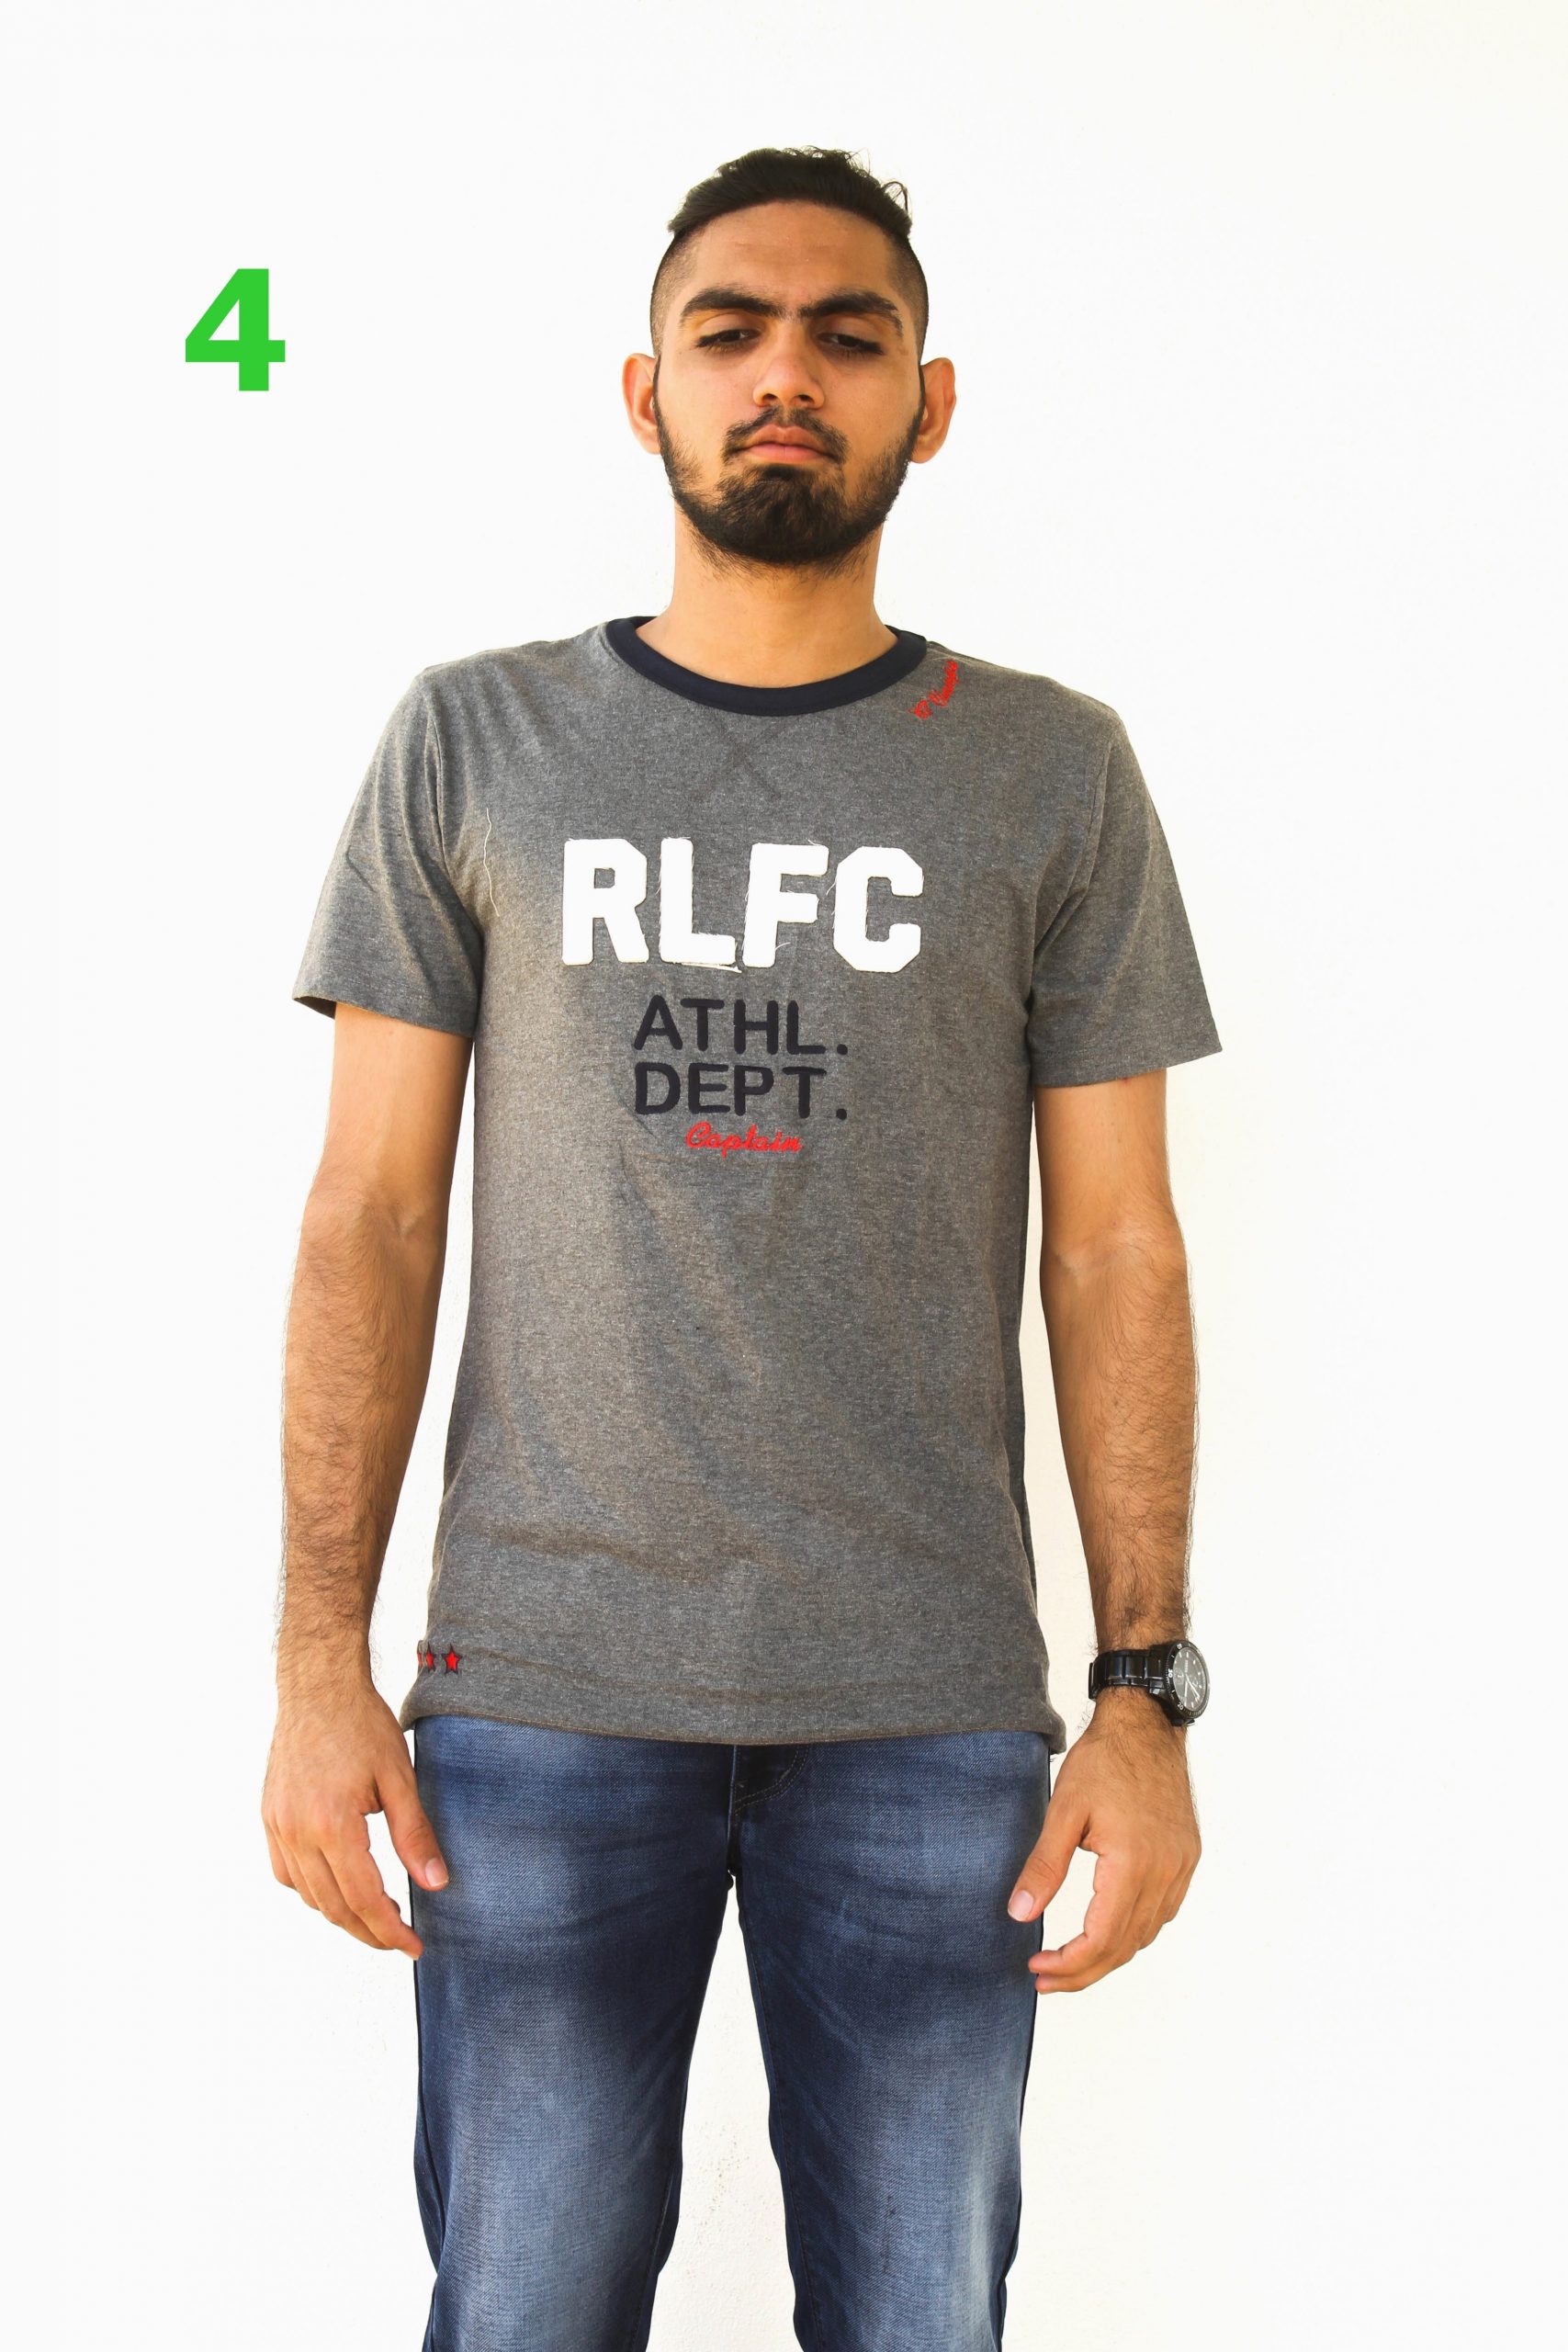 Ralph Lauren Performance 2 T-Shirt Pack (12 Designs)